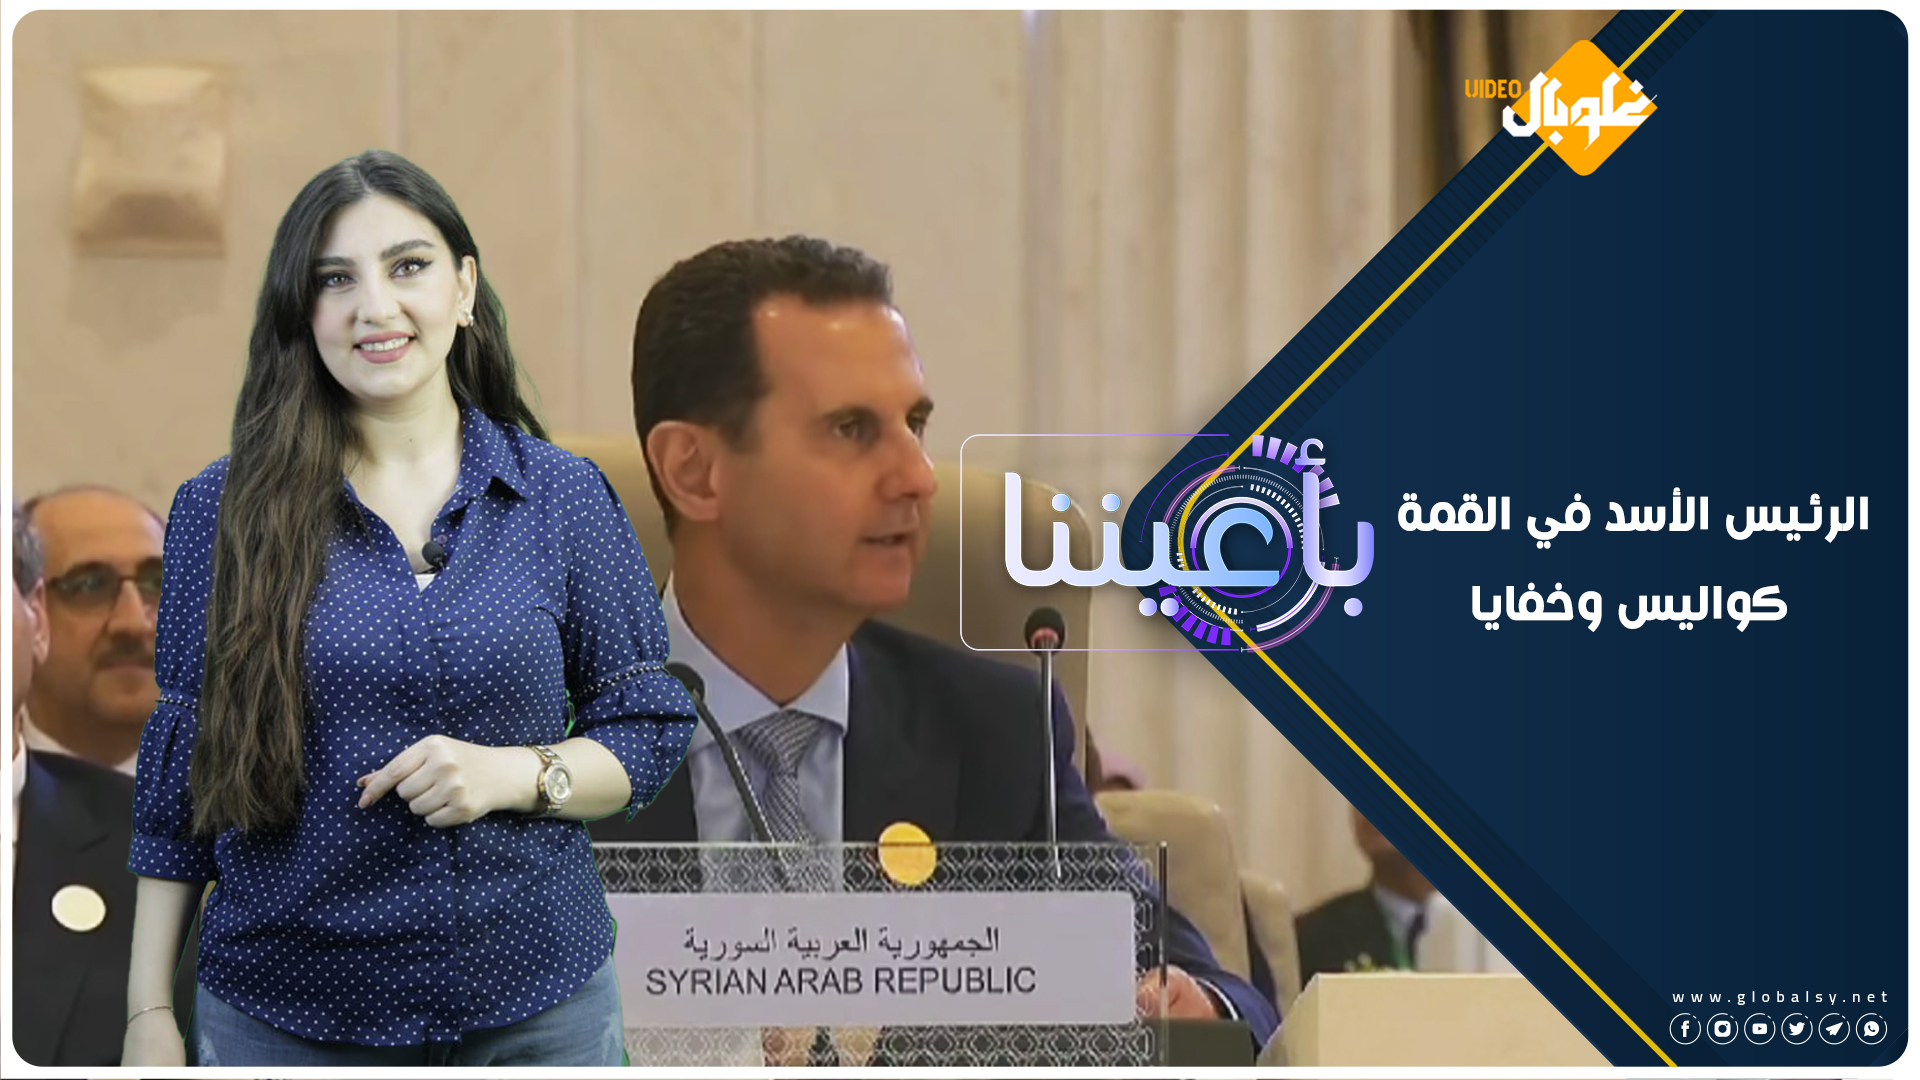 الرئيس الأسد في القمة…. بمن التقى!